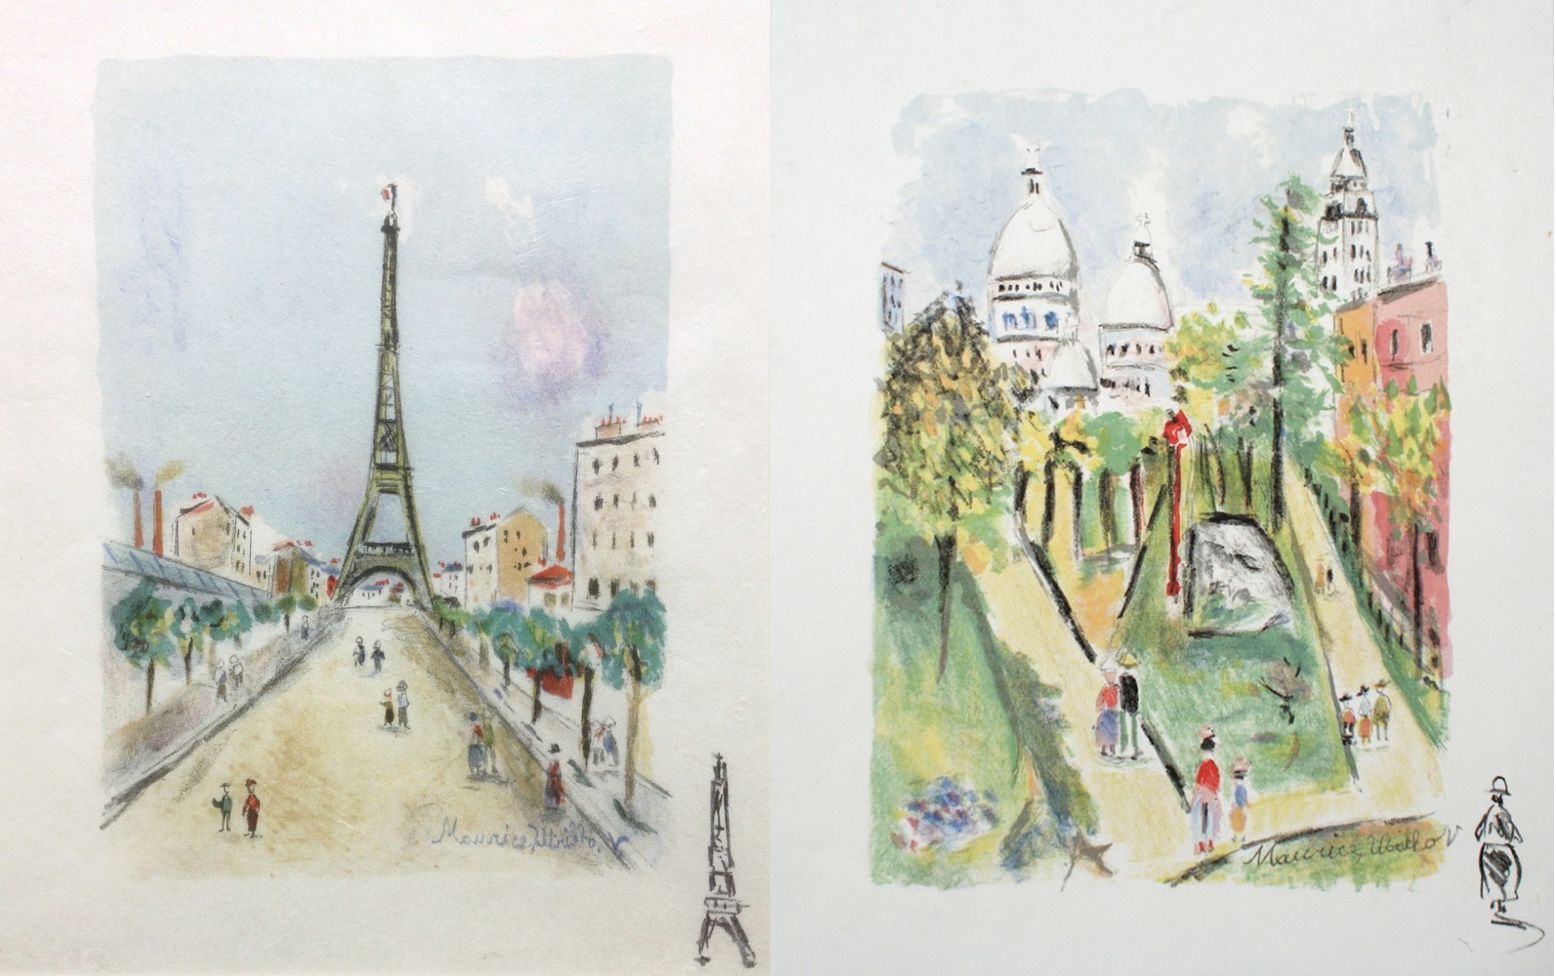 ‘La Tour Eiffel’ (1955) (left) and ‘Le Sacre Coeur’ (1955) (right) – Maurice Utrillo